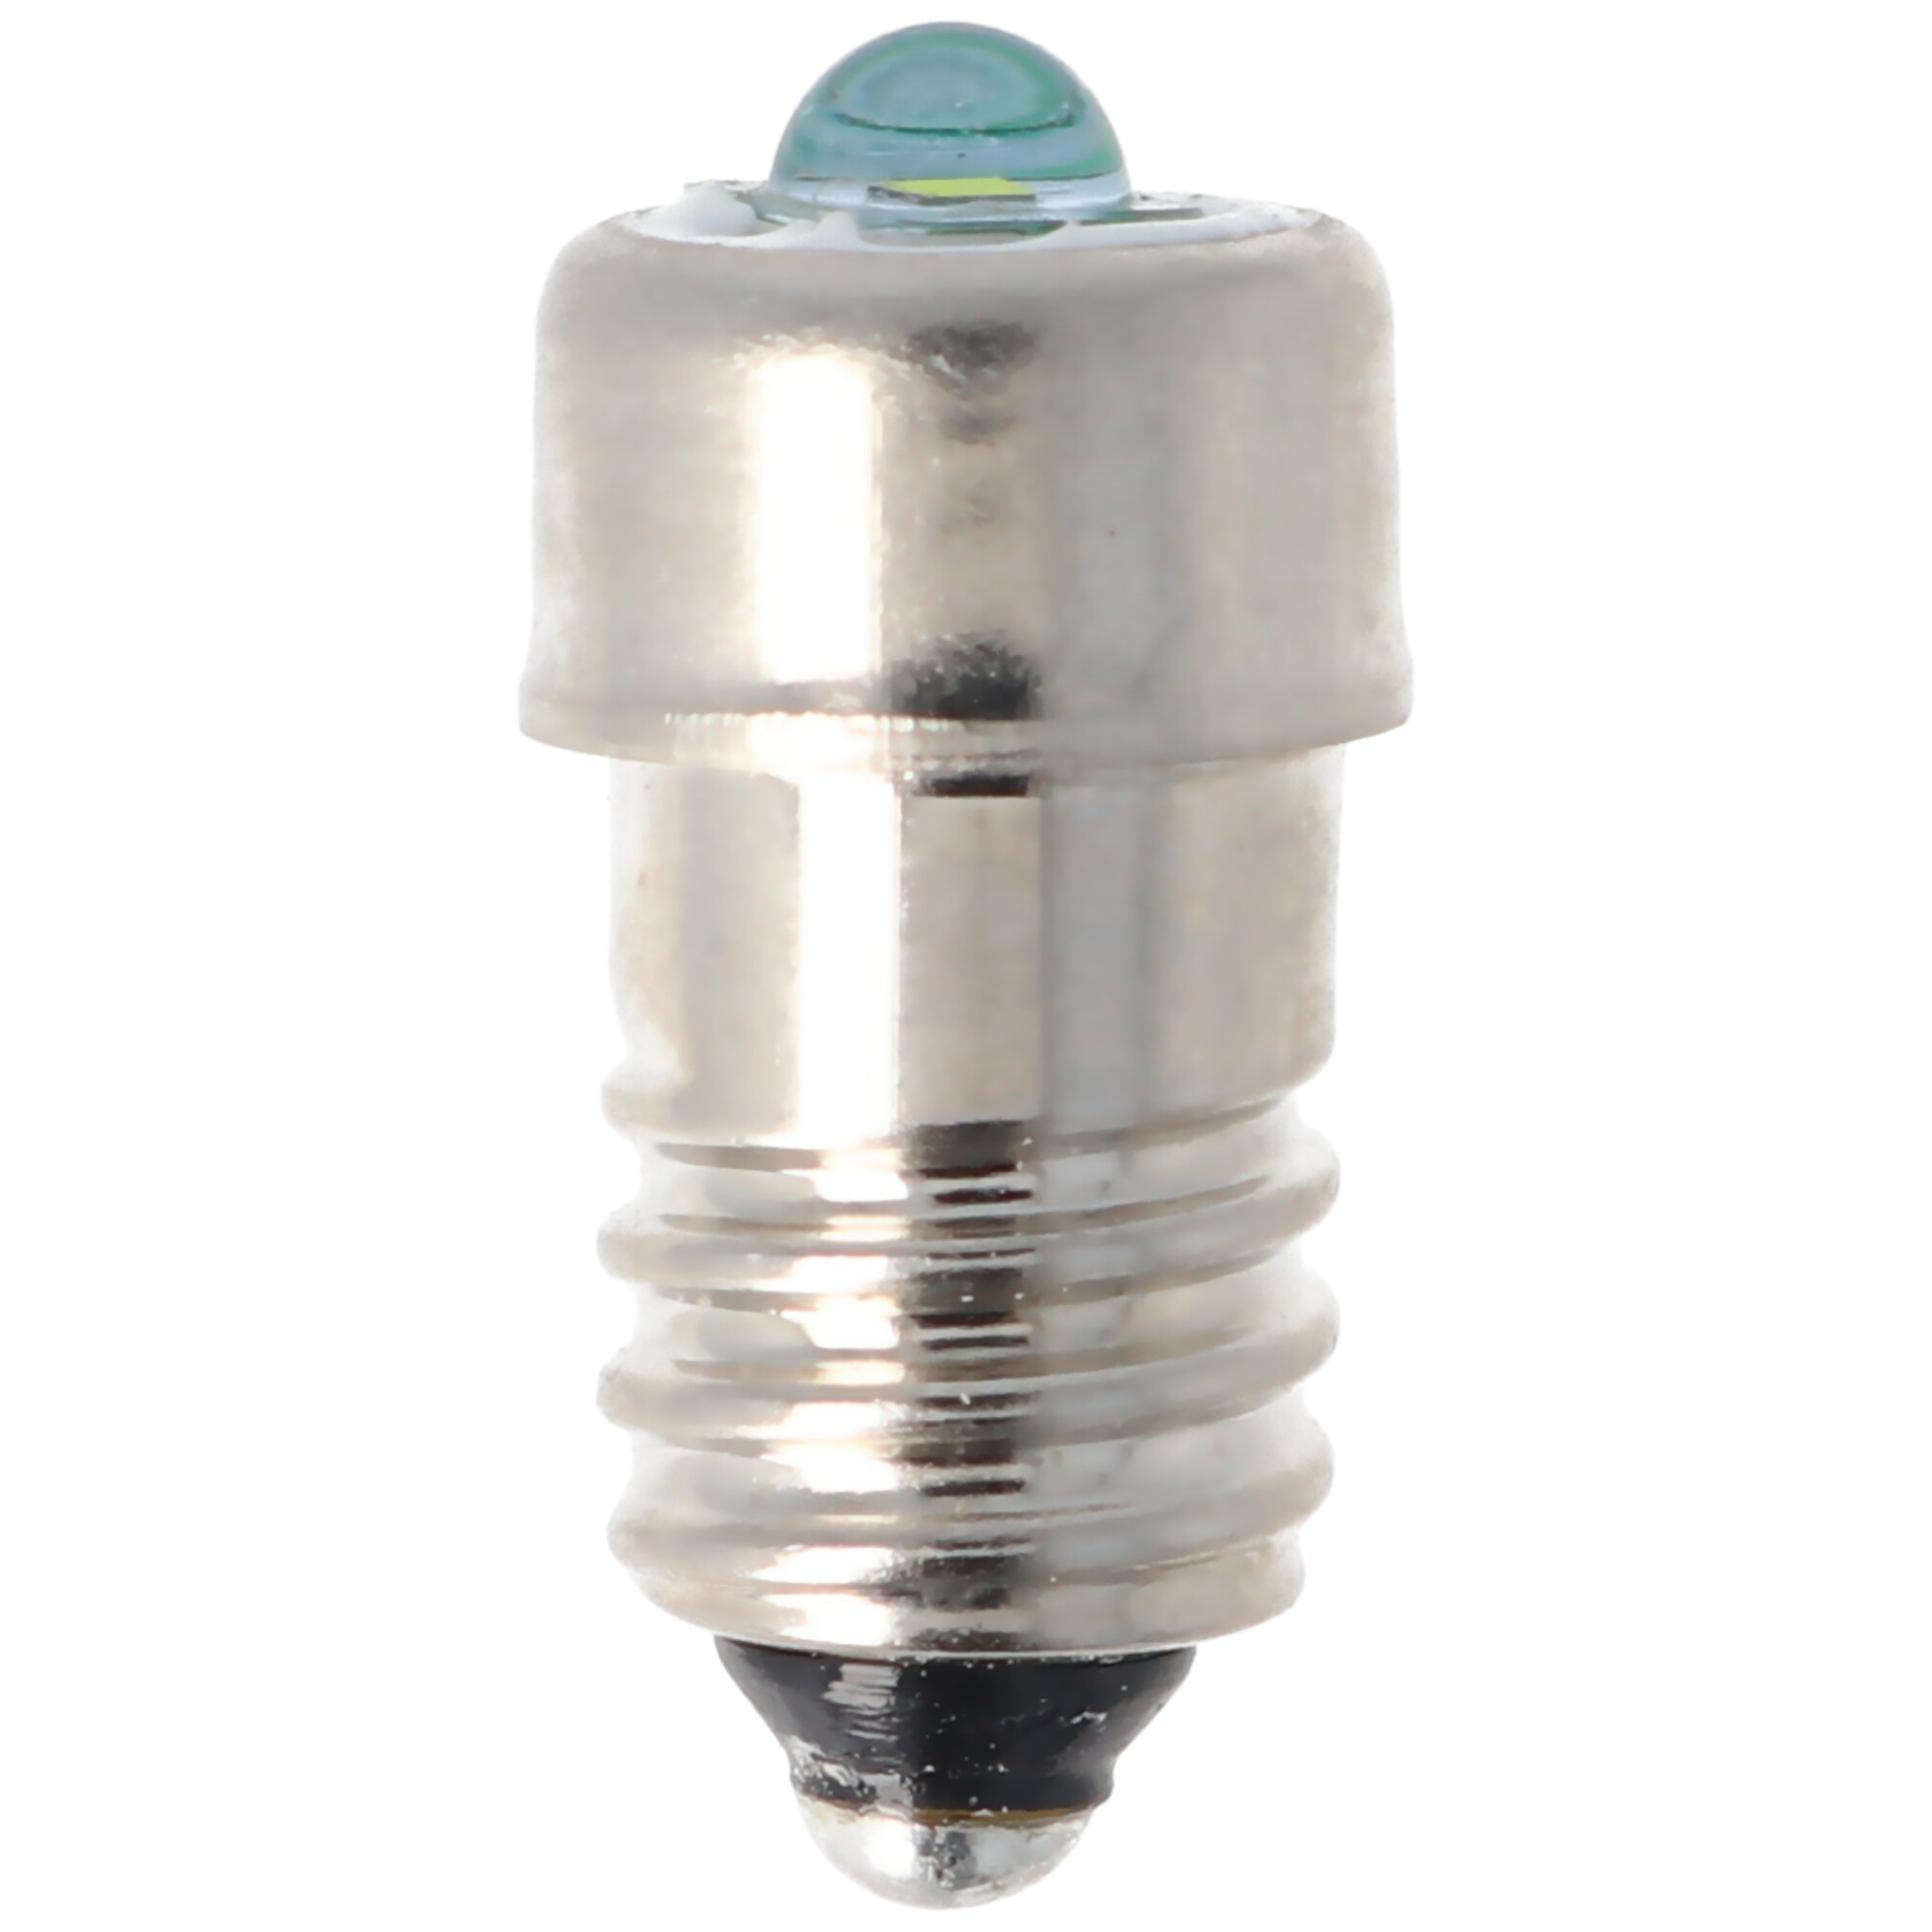 LED Ersatzbirnchen 3 Volt mit Schraubverschluss E10, LED-Birnchen 3V/0,33A 0,5W E10, B1, für 2 AA, C, D, 1 Duplex